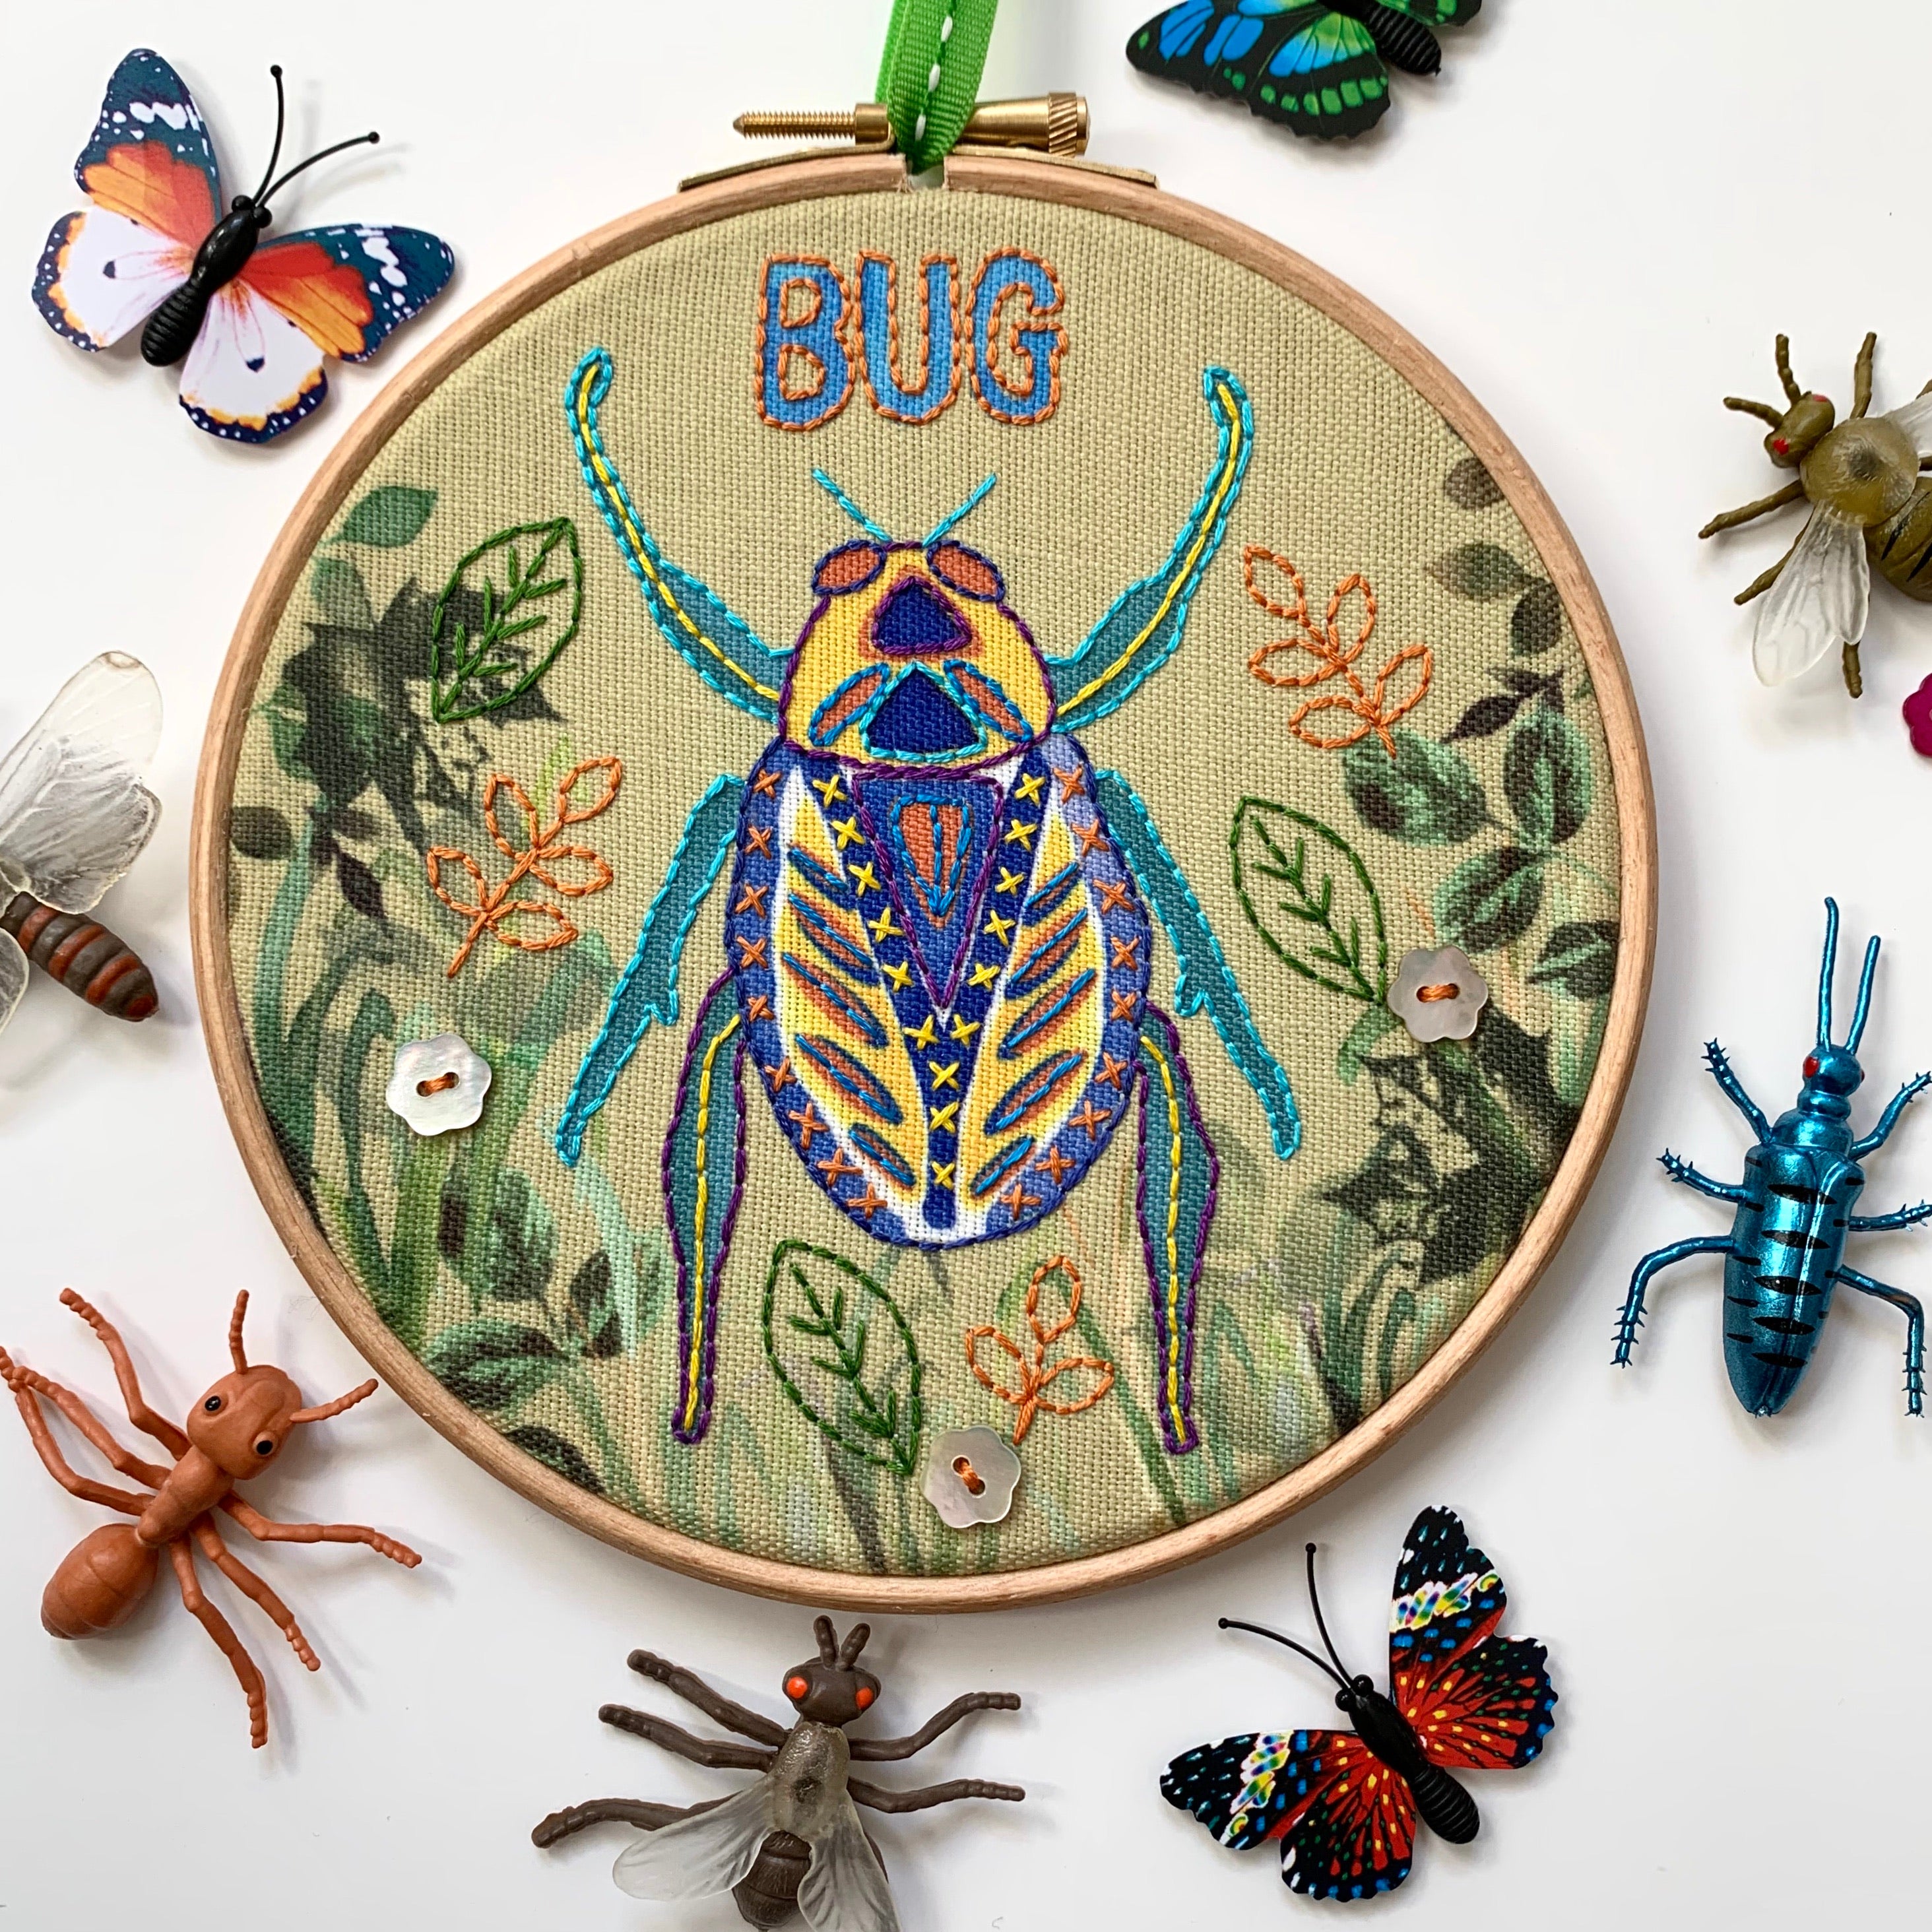 Bug Embroidery kit